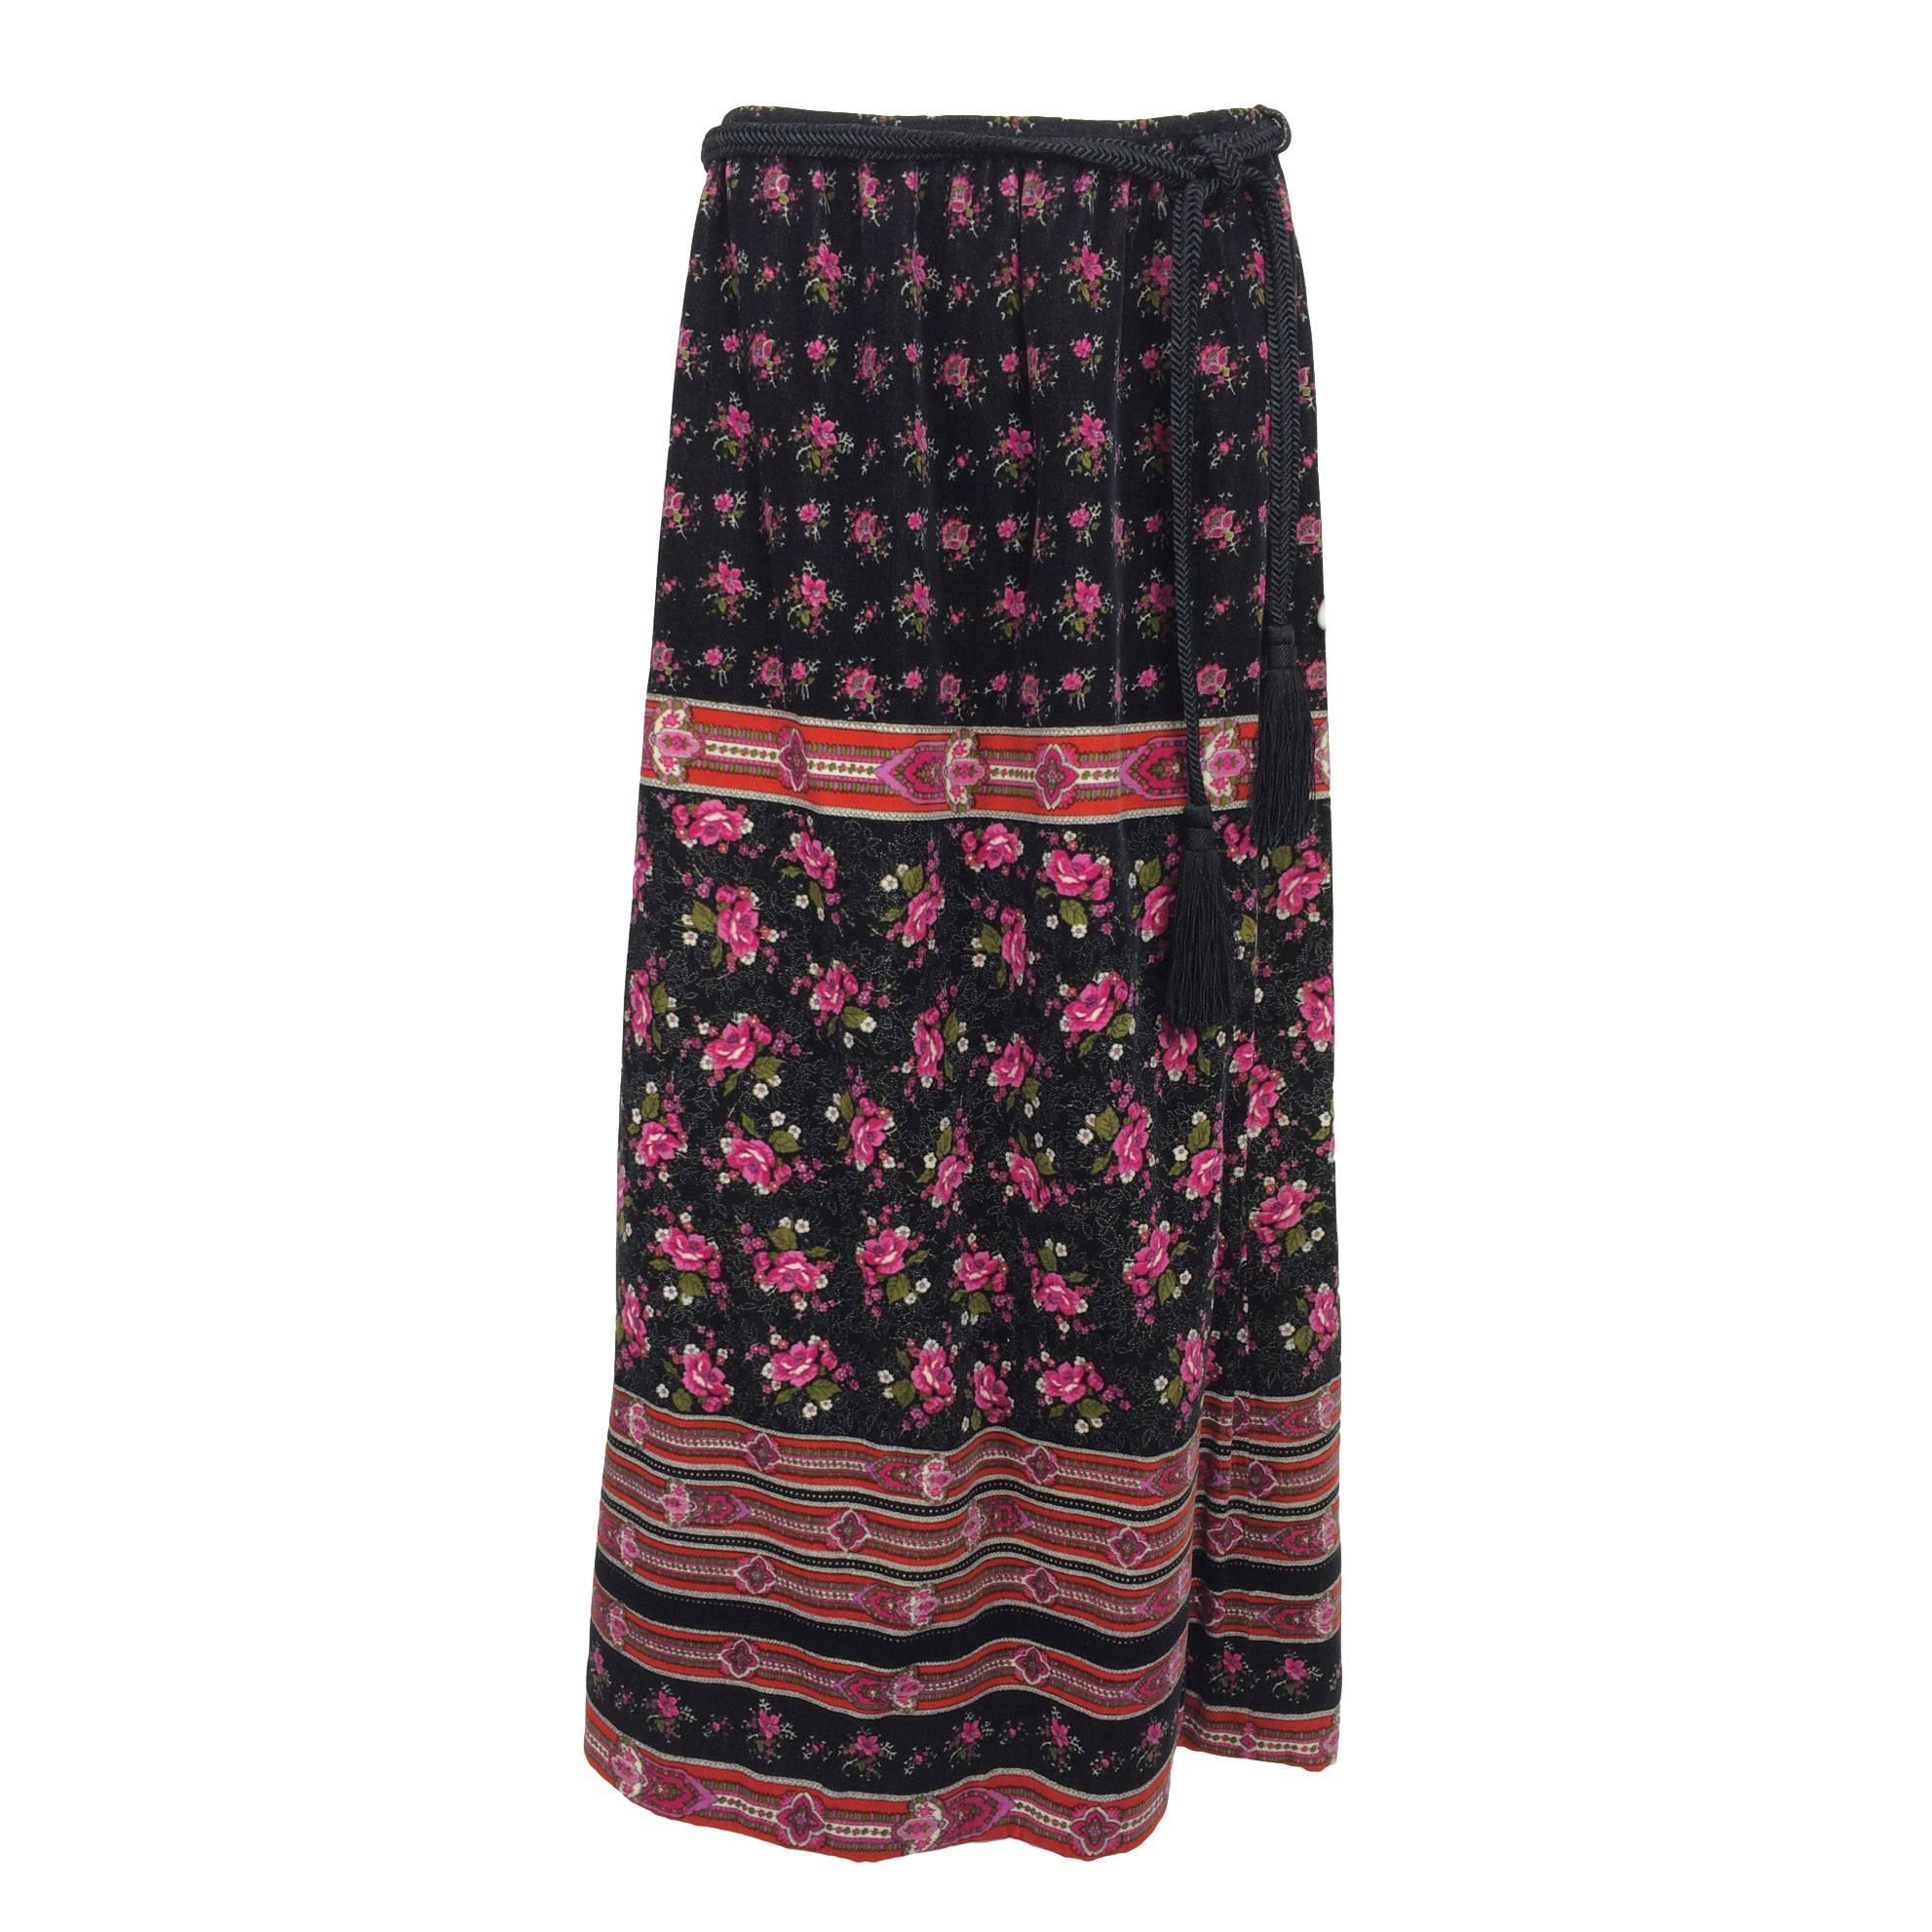 Lanvin floral printed velvet maxi skirt with tassel cord belt 1970s